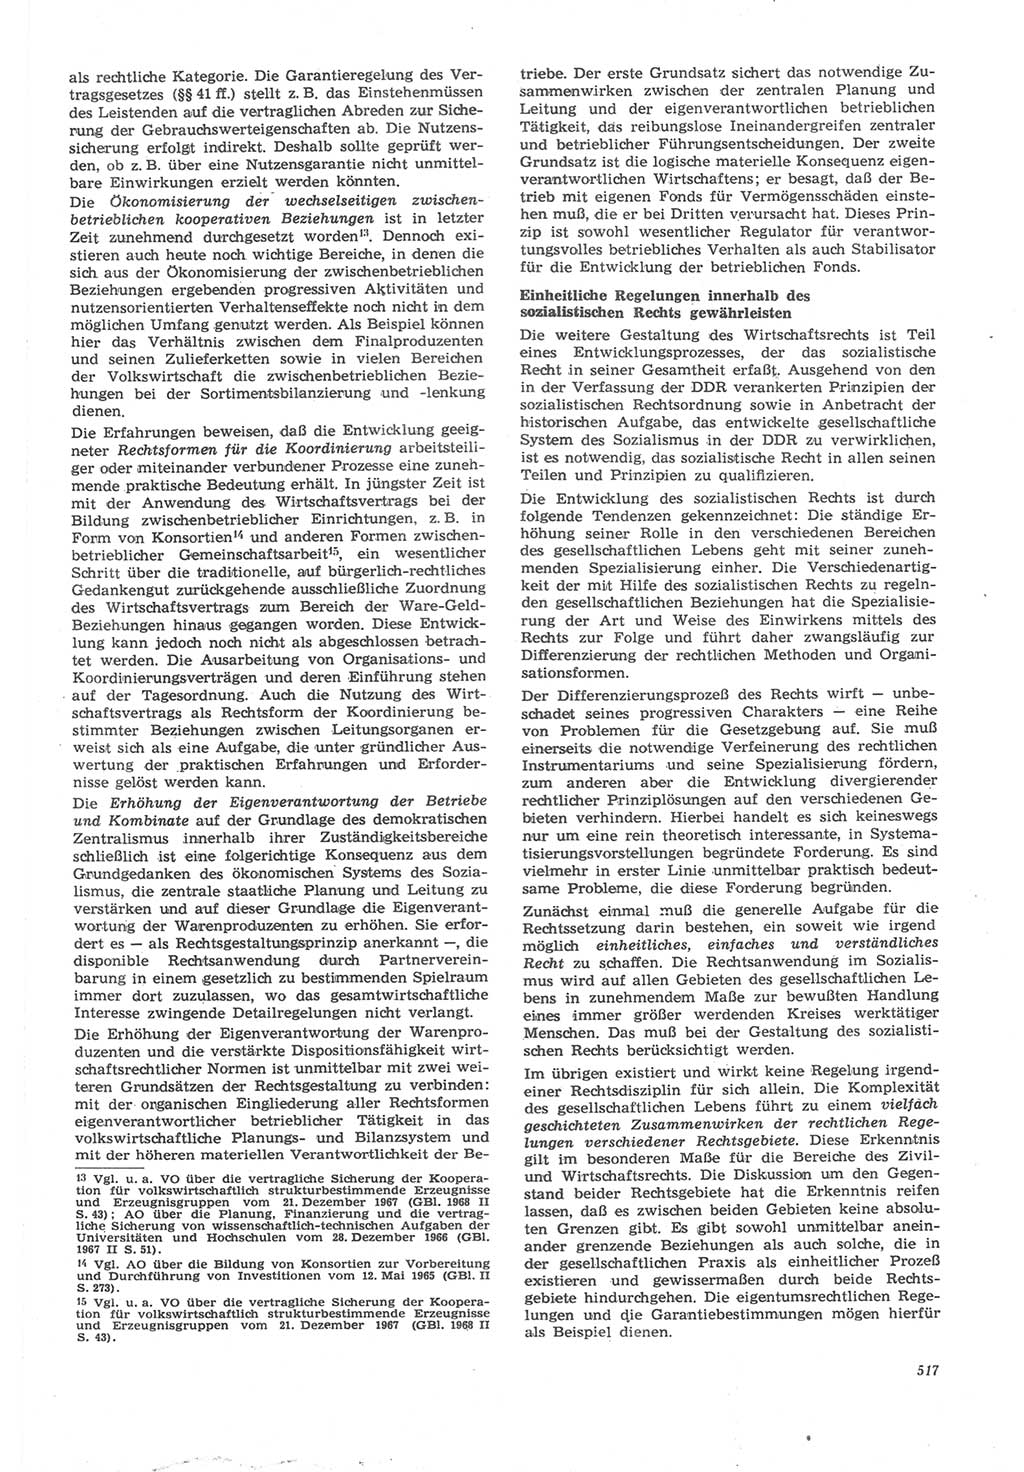 Neue Justiz (NJ), Zeitschrift für Recht und Rechtswissenschaft [Deutsche Demokratische Republik (DDR)], 22. Jahrgang 1968, Seite 517 (NJ DDR 1968, S. 517)